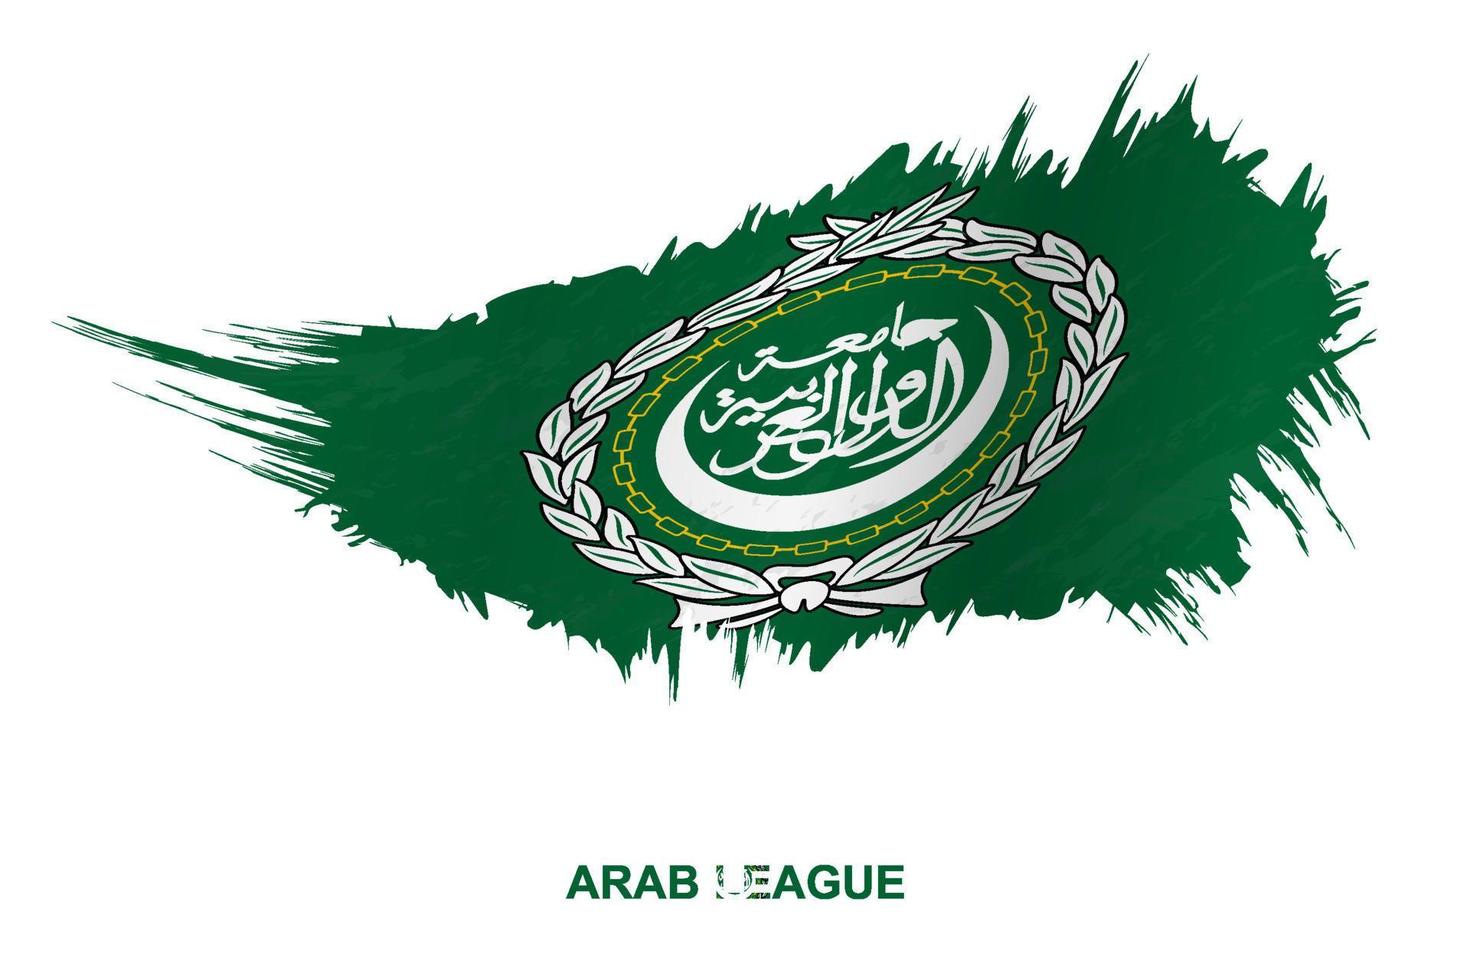 bandeira da liga árabe em estilo grunge com efeito de ondulação. vetor